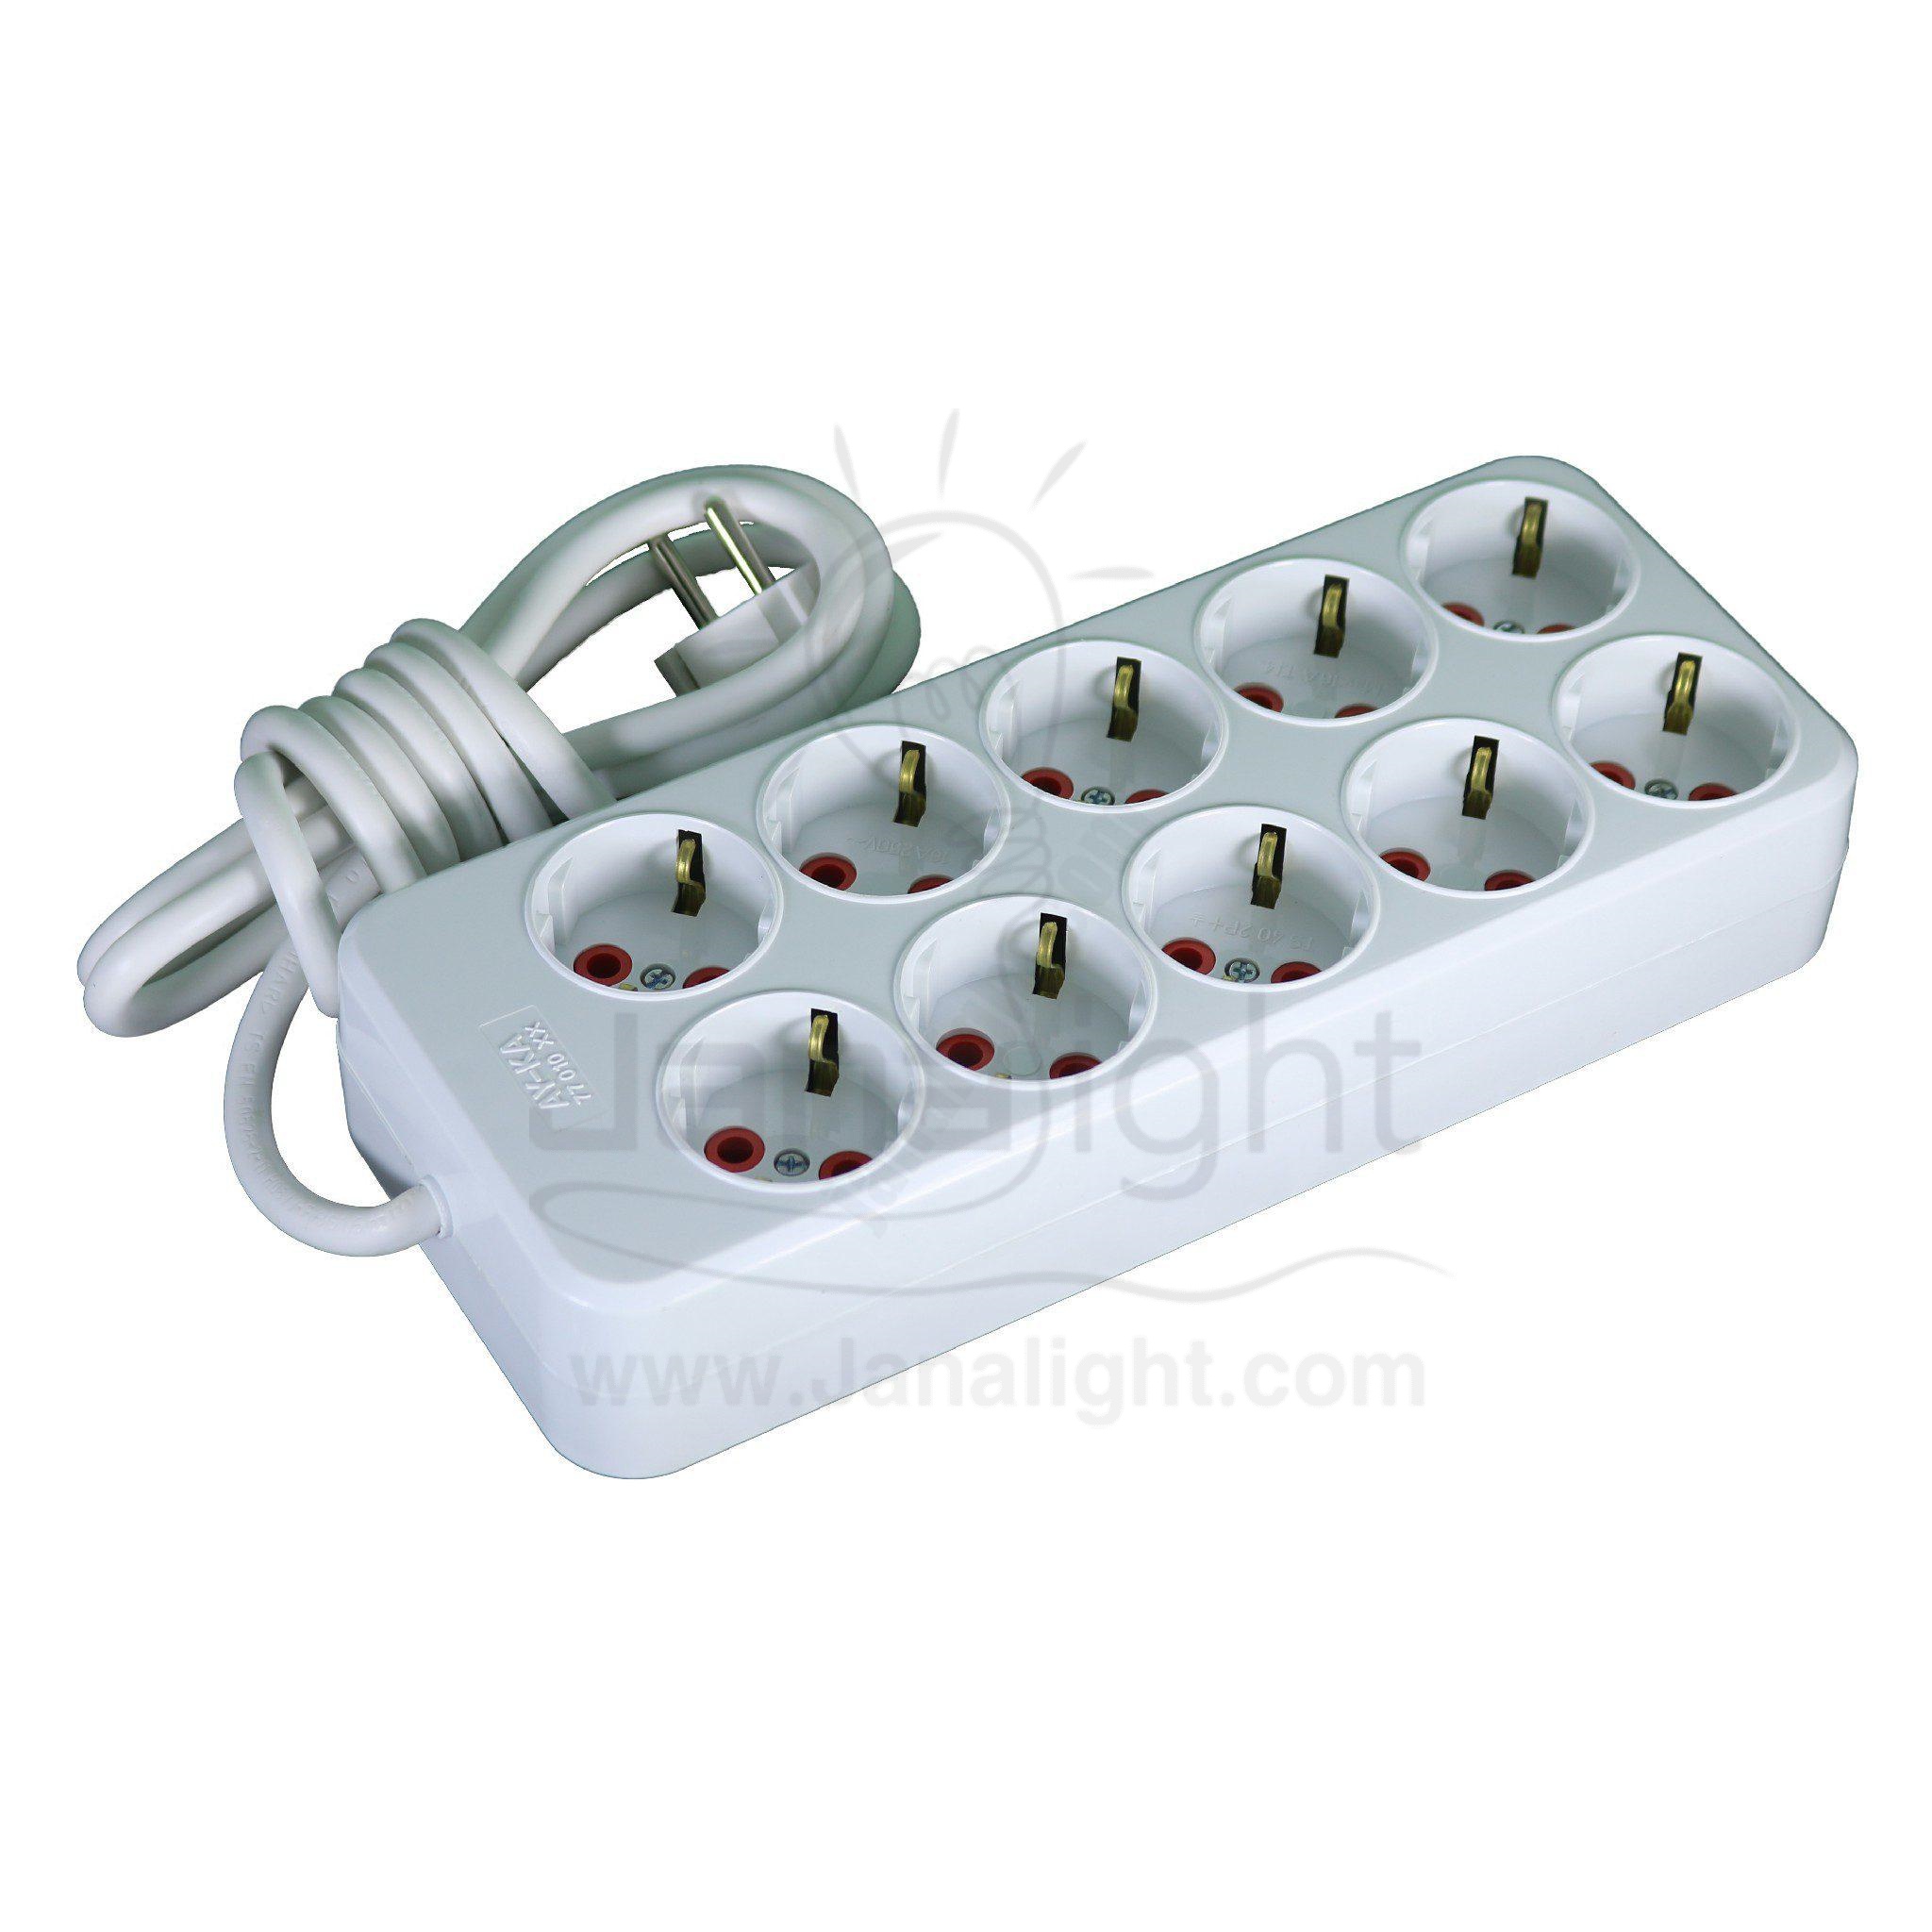 مشترك 10 عين تركي بسلك 2 مترmulti socket plug 10 socket outlet with 2 meter cabled Turkish